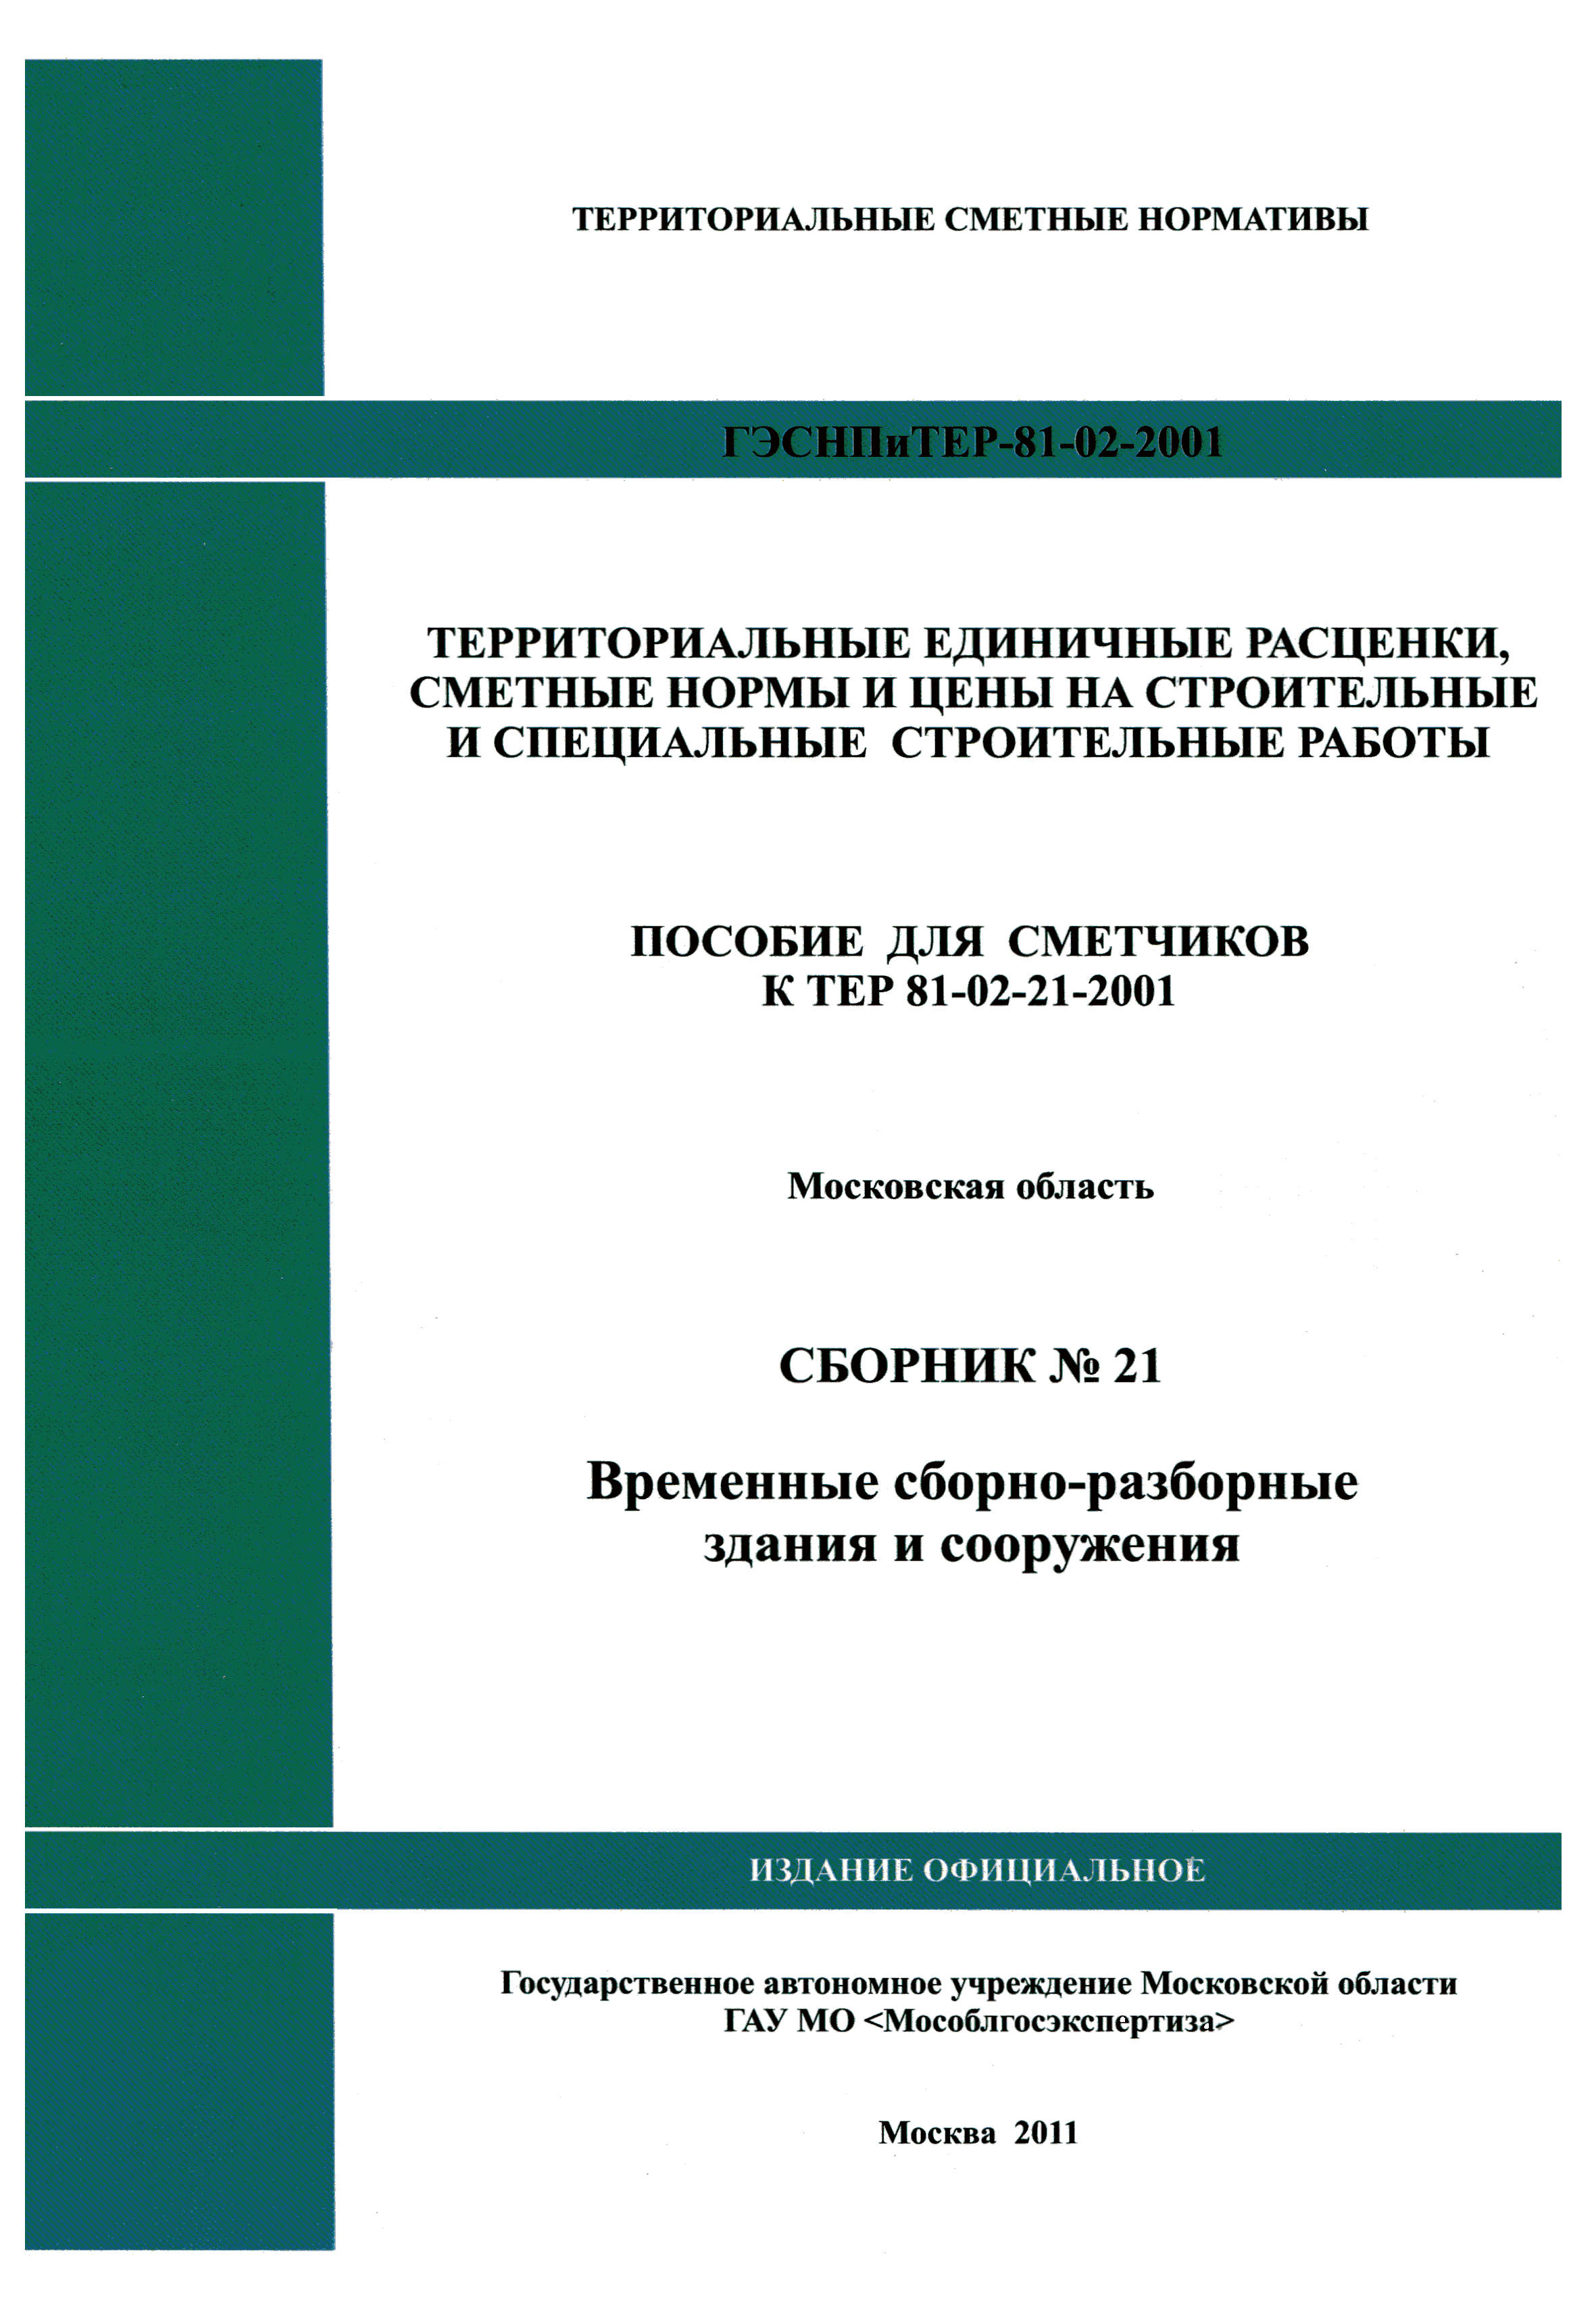 ГЭСНПиТЕР 2001-21 Московской области